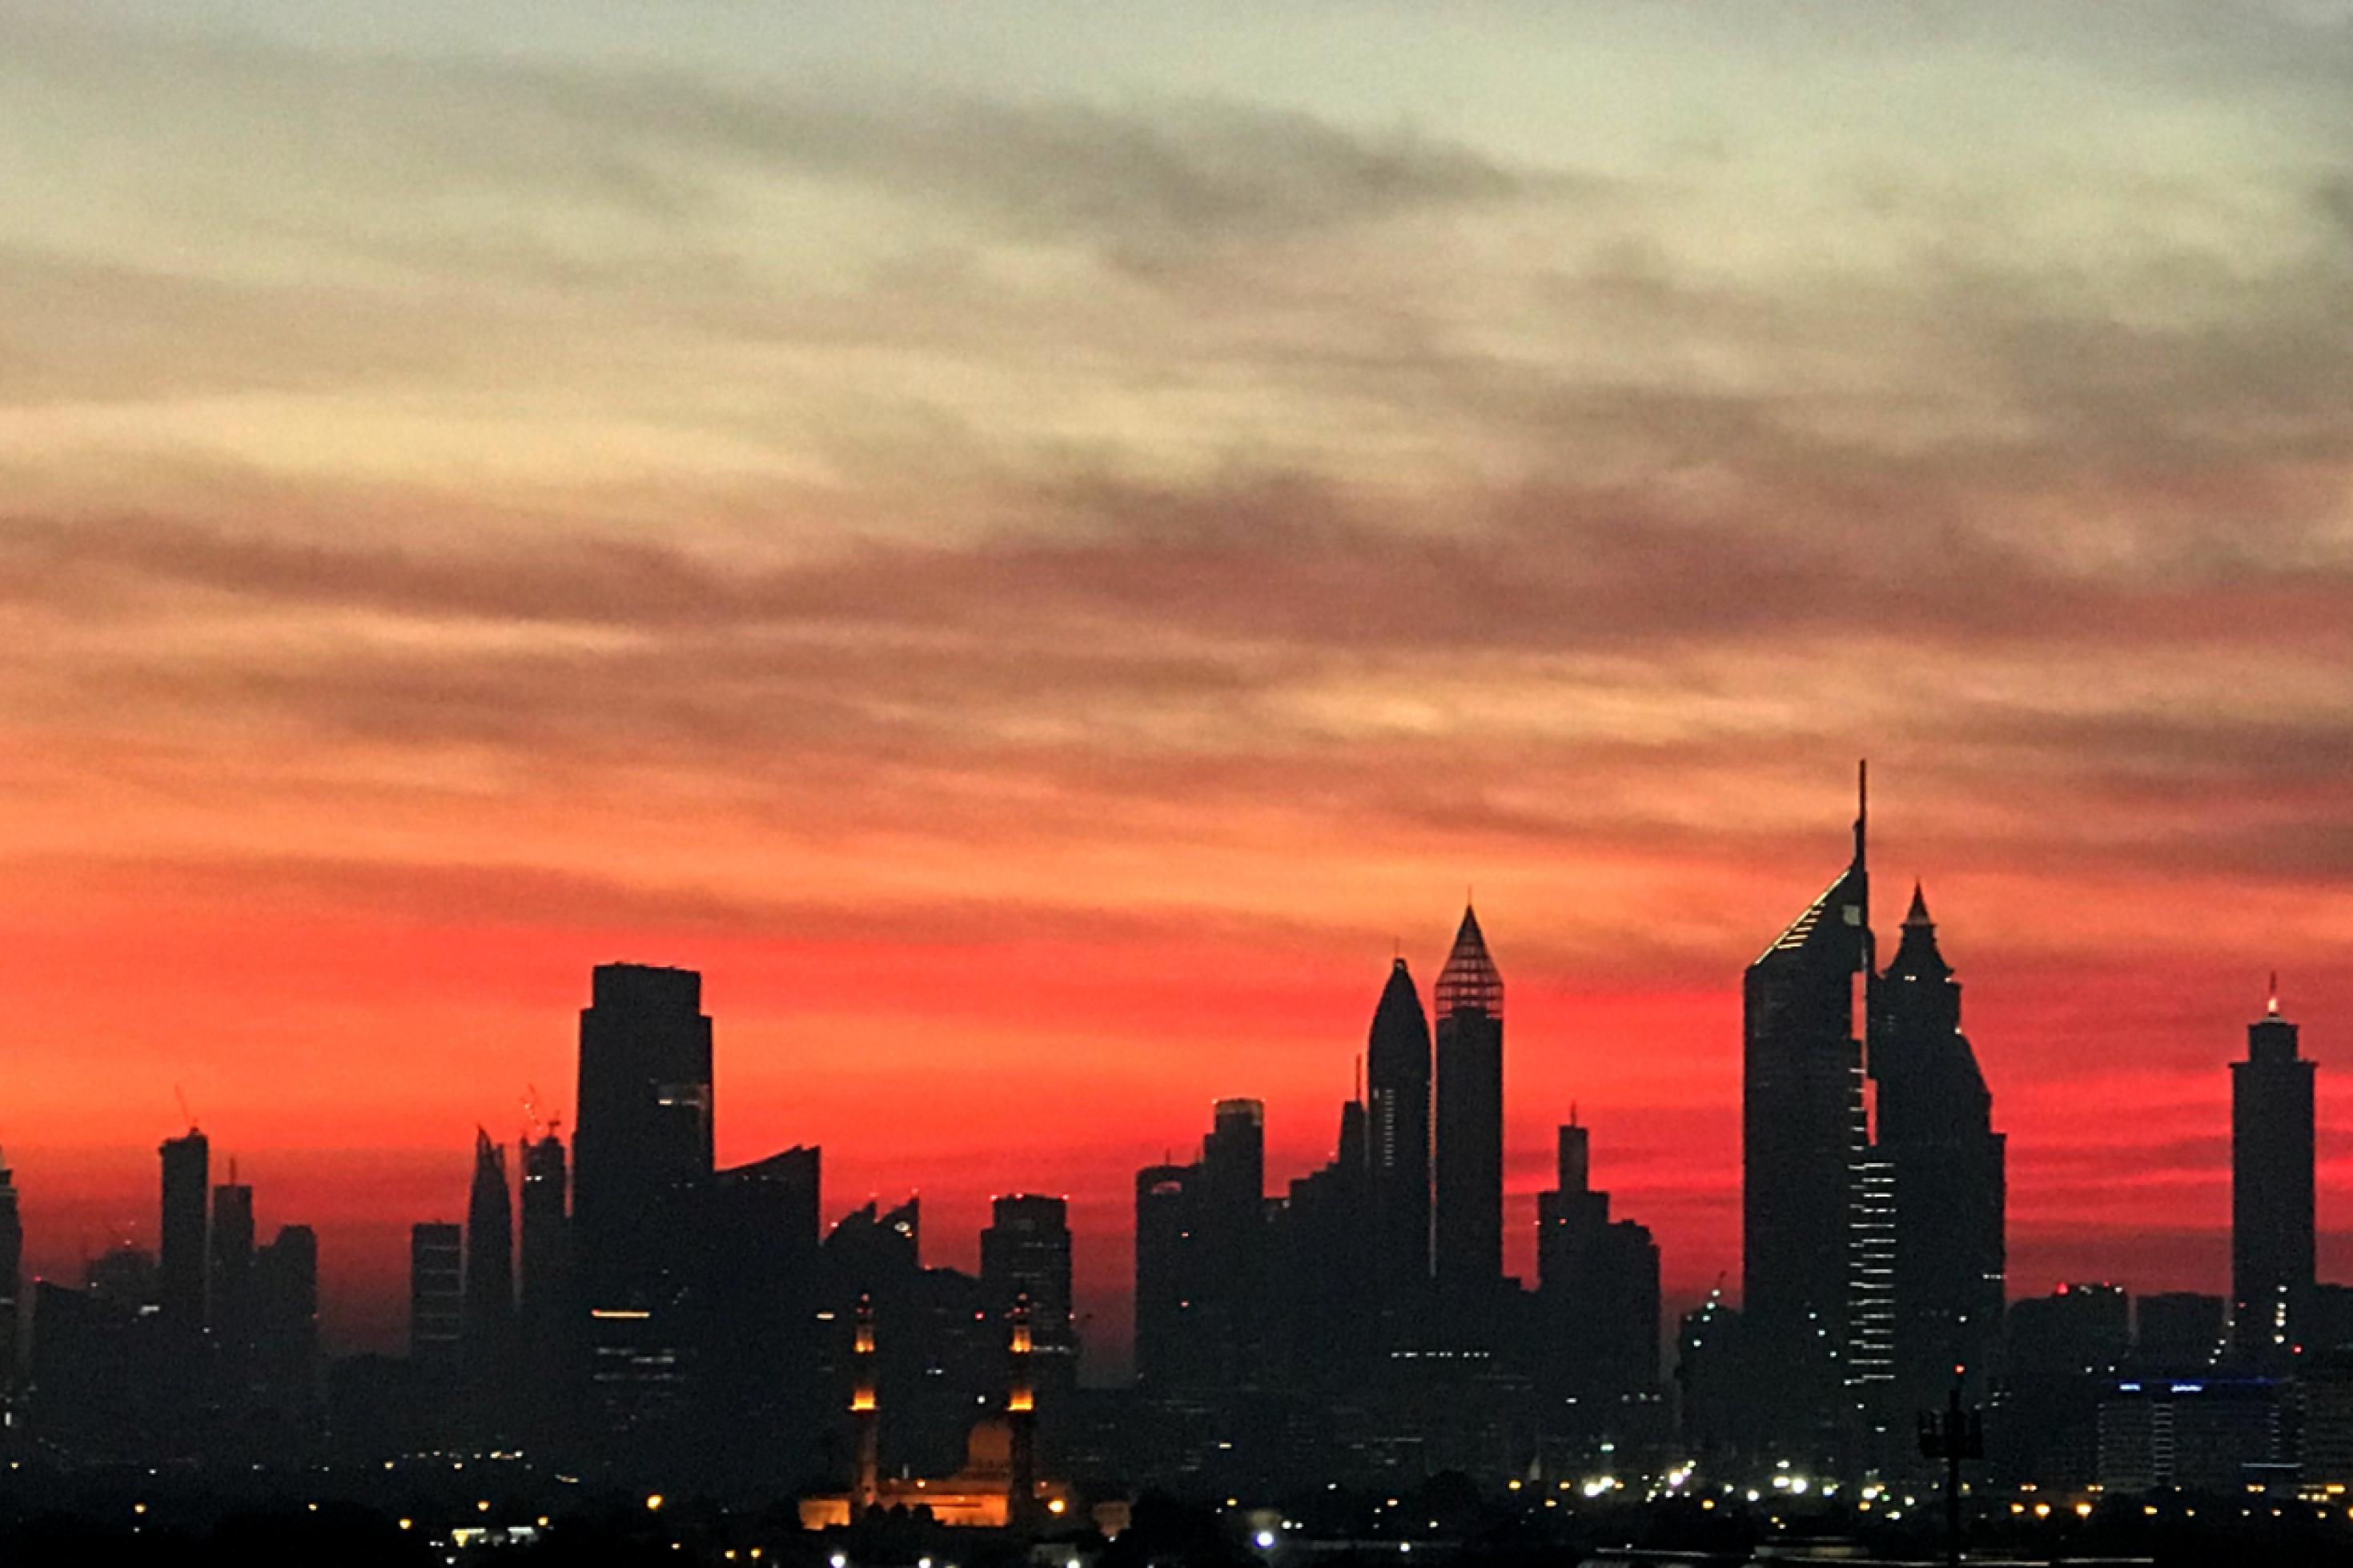 Die Skyline von Dubai mit etlichen Wolkenkratzern und rotem Abendhimmel